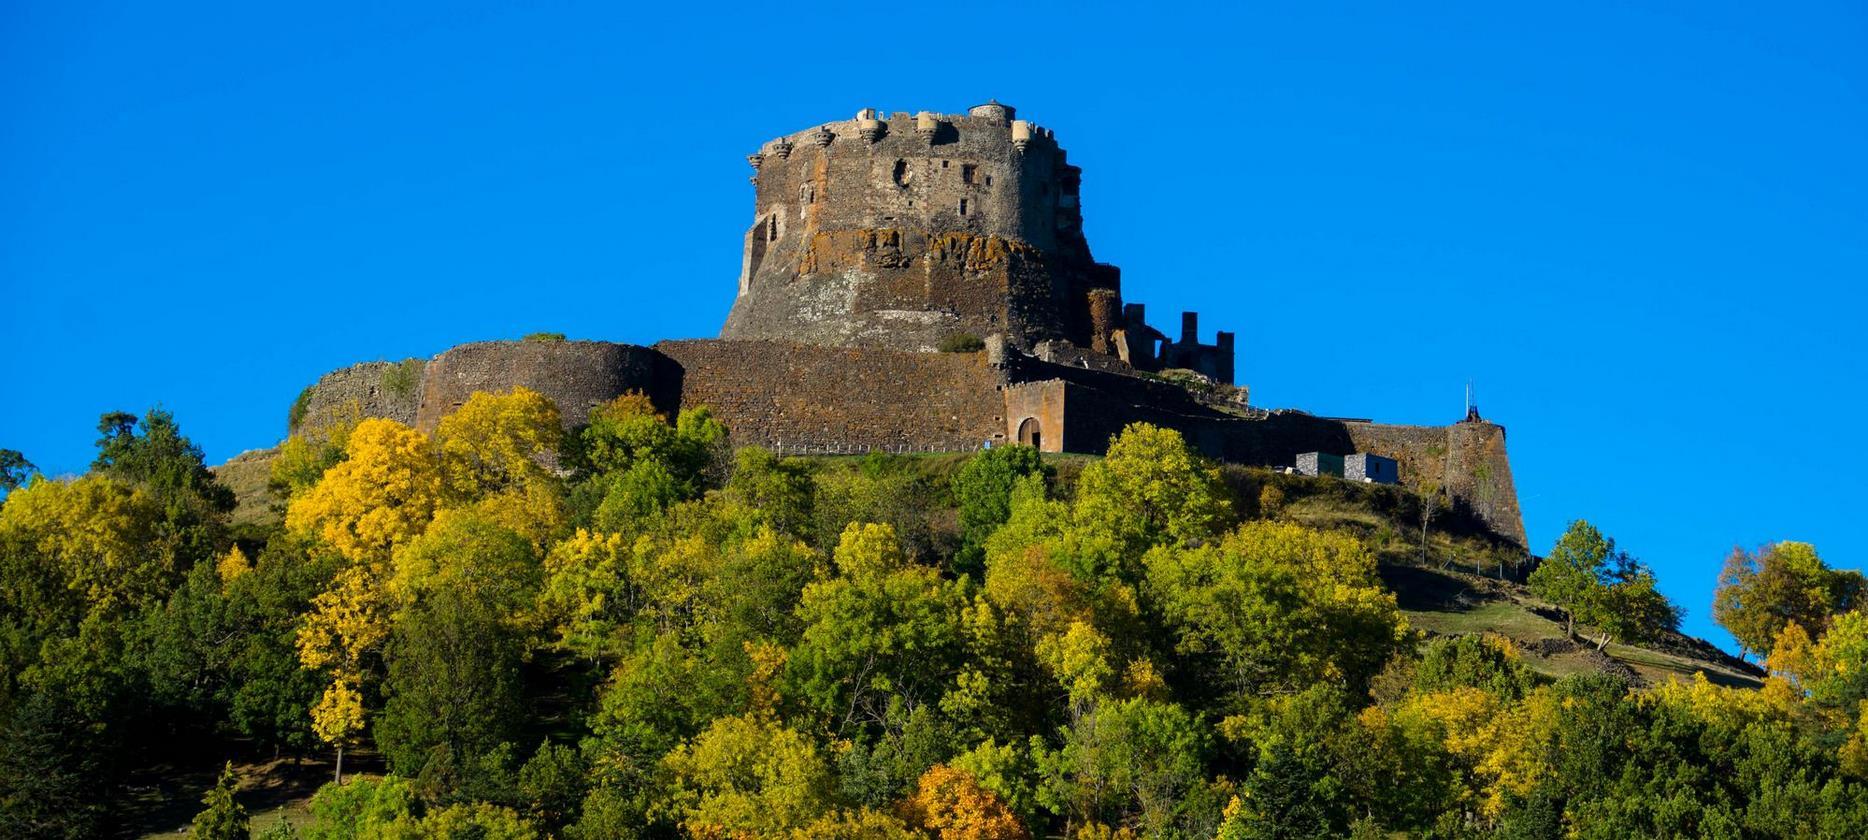 Super Besse - Chateau de Murol, chateau fort surplombant le village de Murol